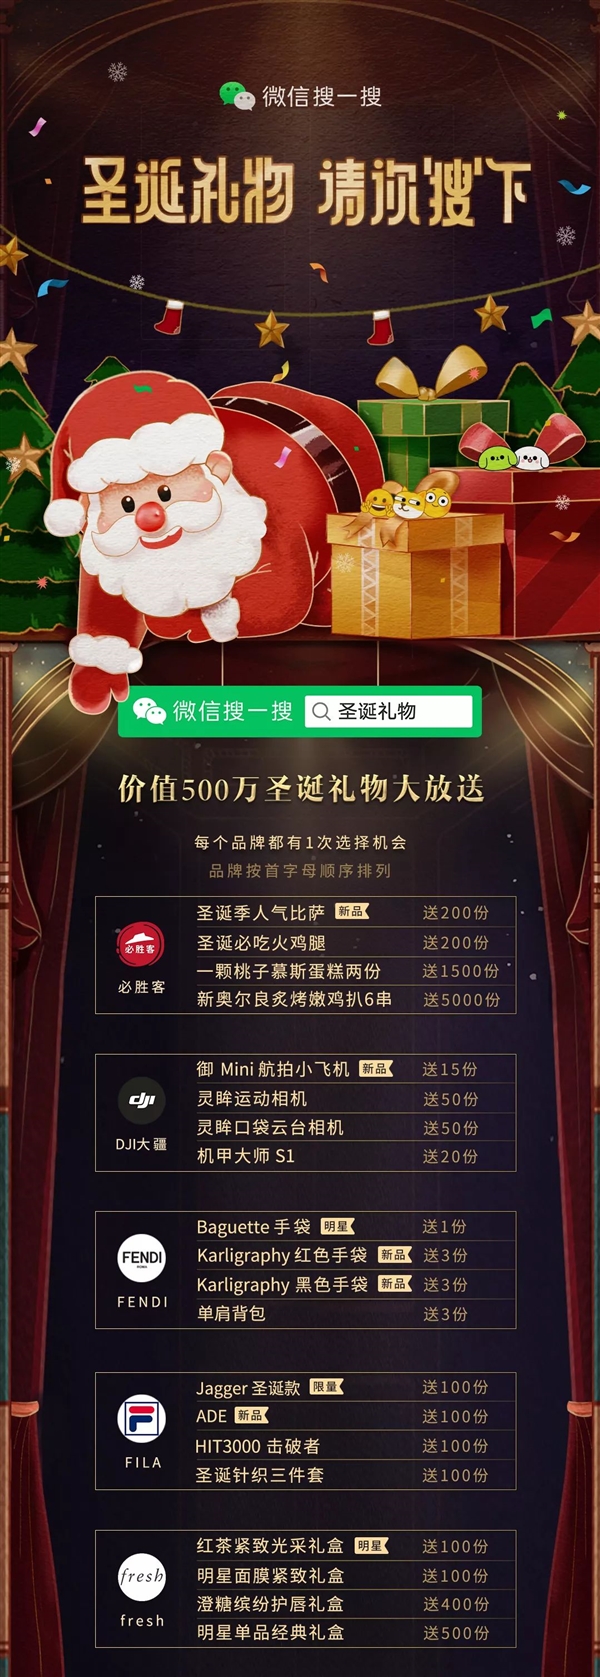 微信搜一搜可许愿“圣诞礼物” 价值500万